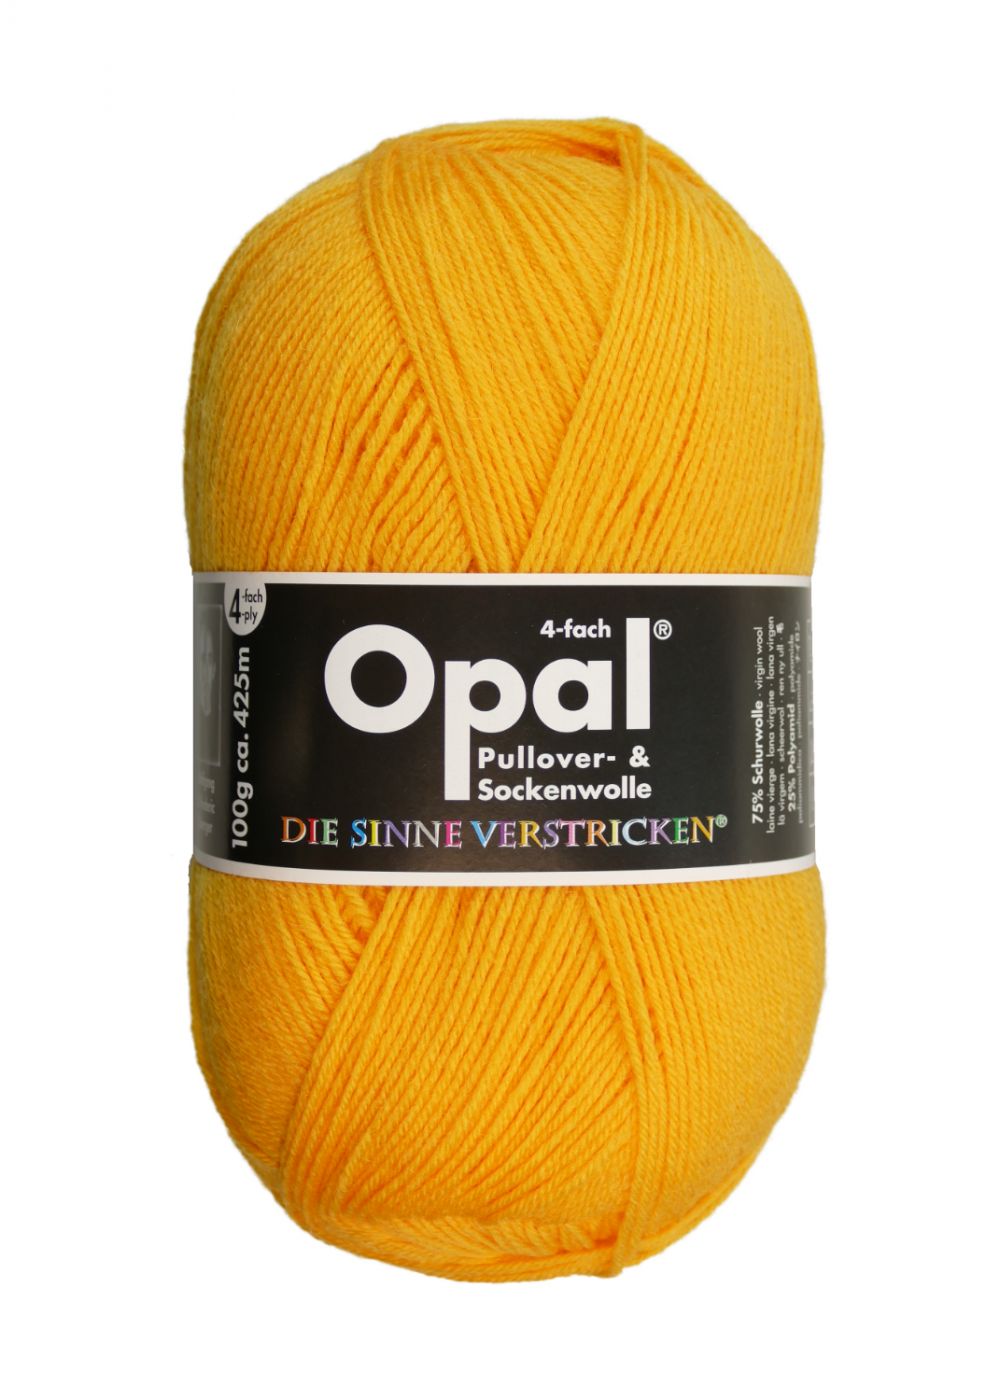 Opal Uni 4-fach 5182 желтый